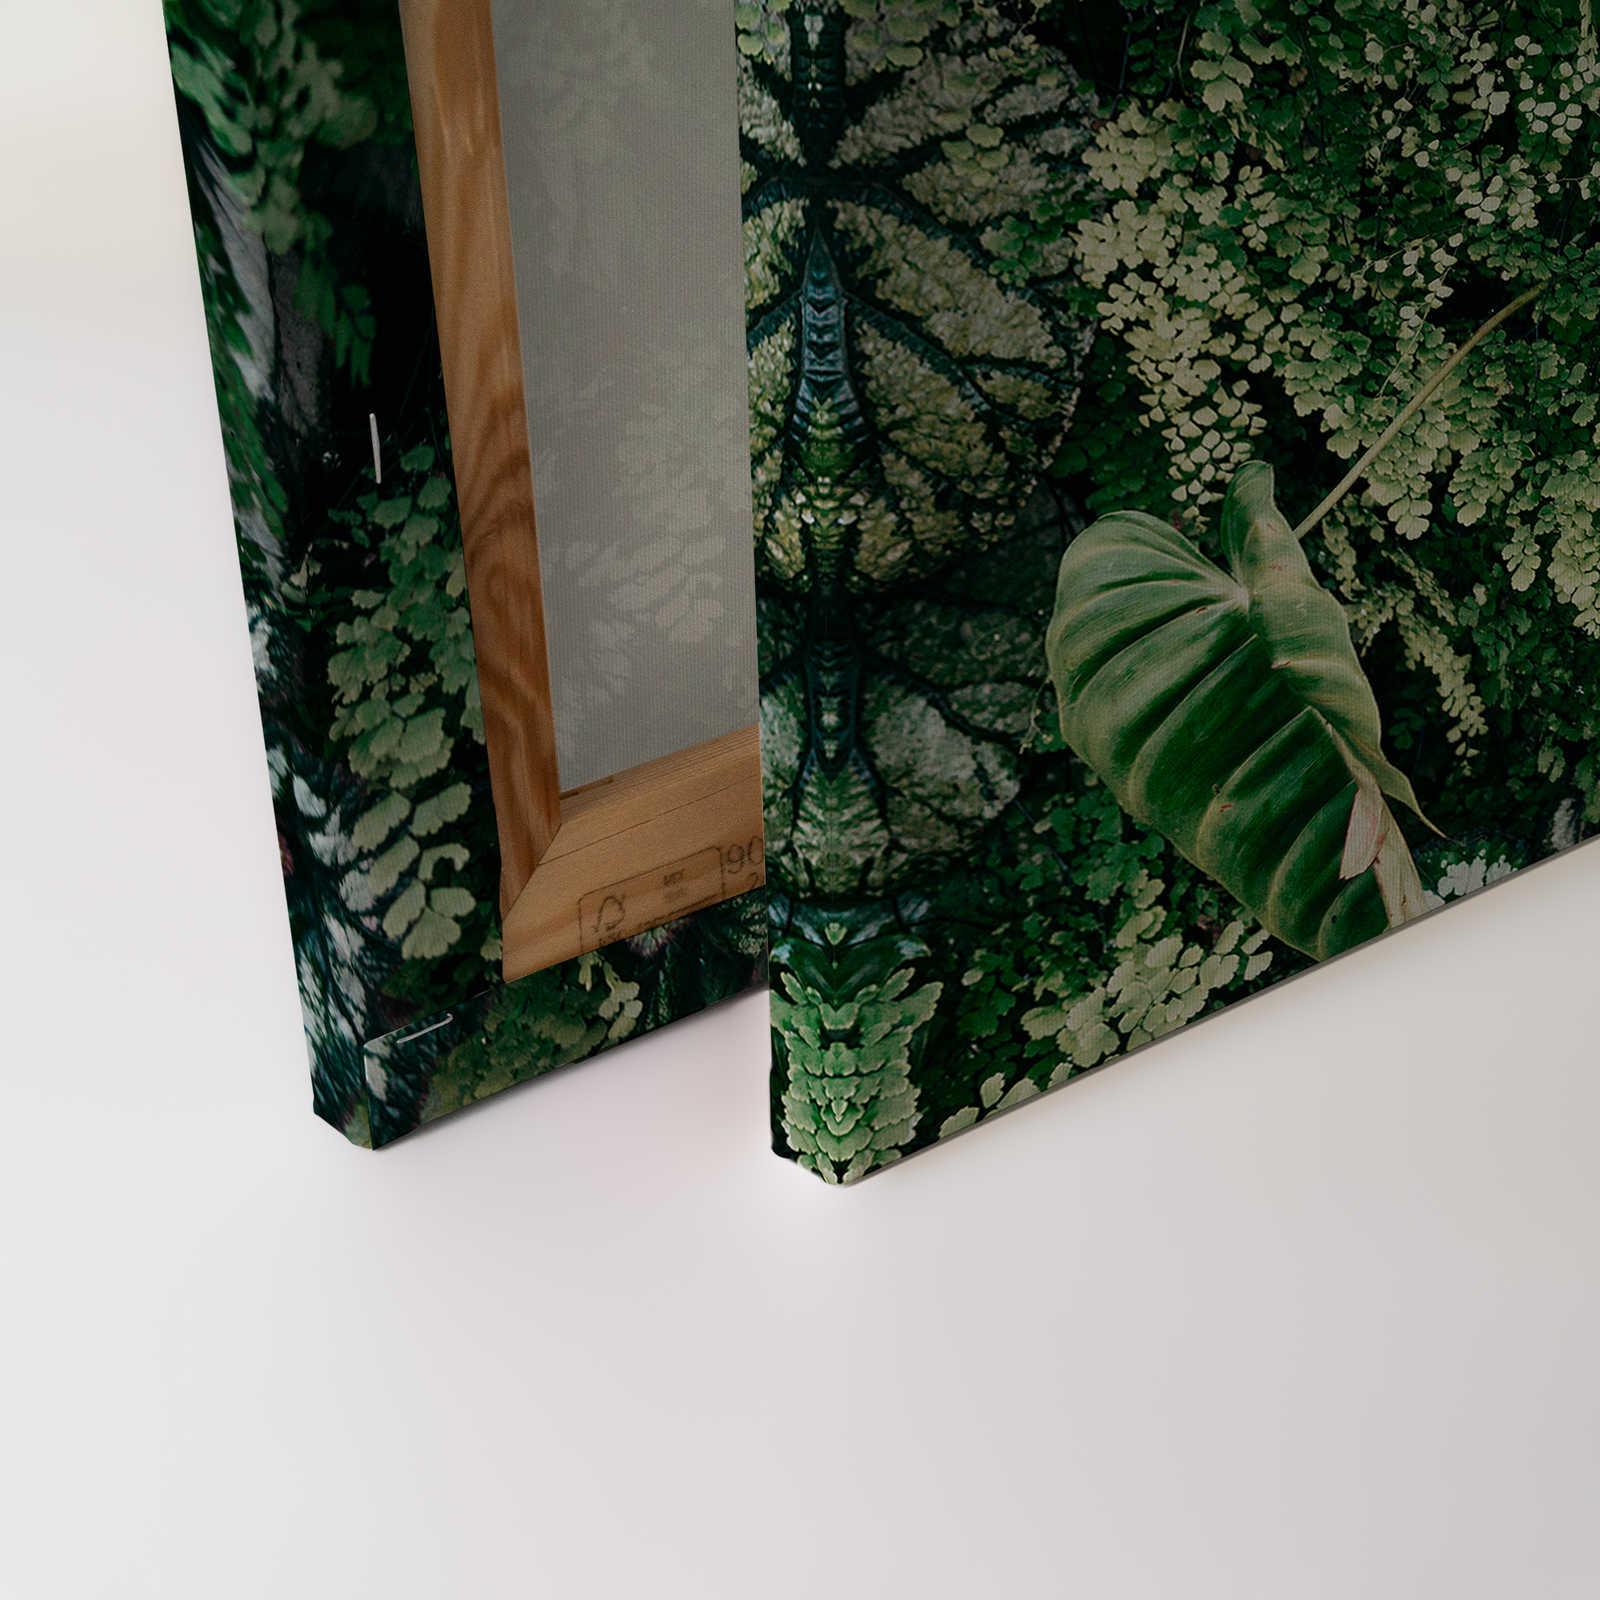             Deep Green 2 - Quadro su tela con foliage, felci e piante pendenti - 1,20 m x 0,80 m
        